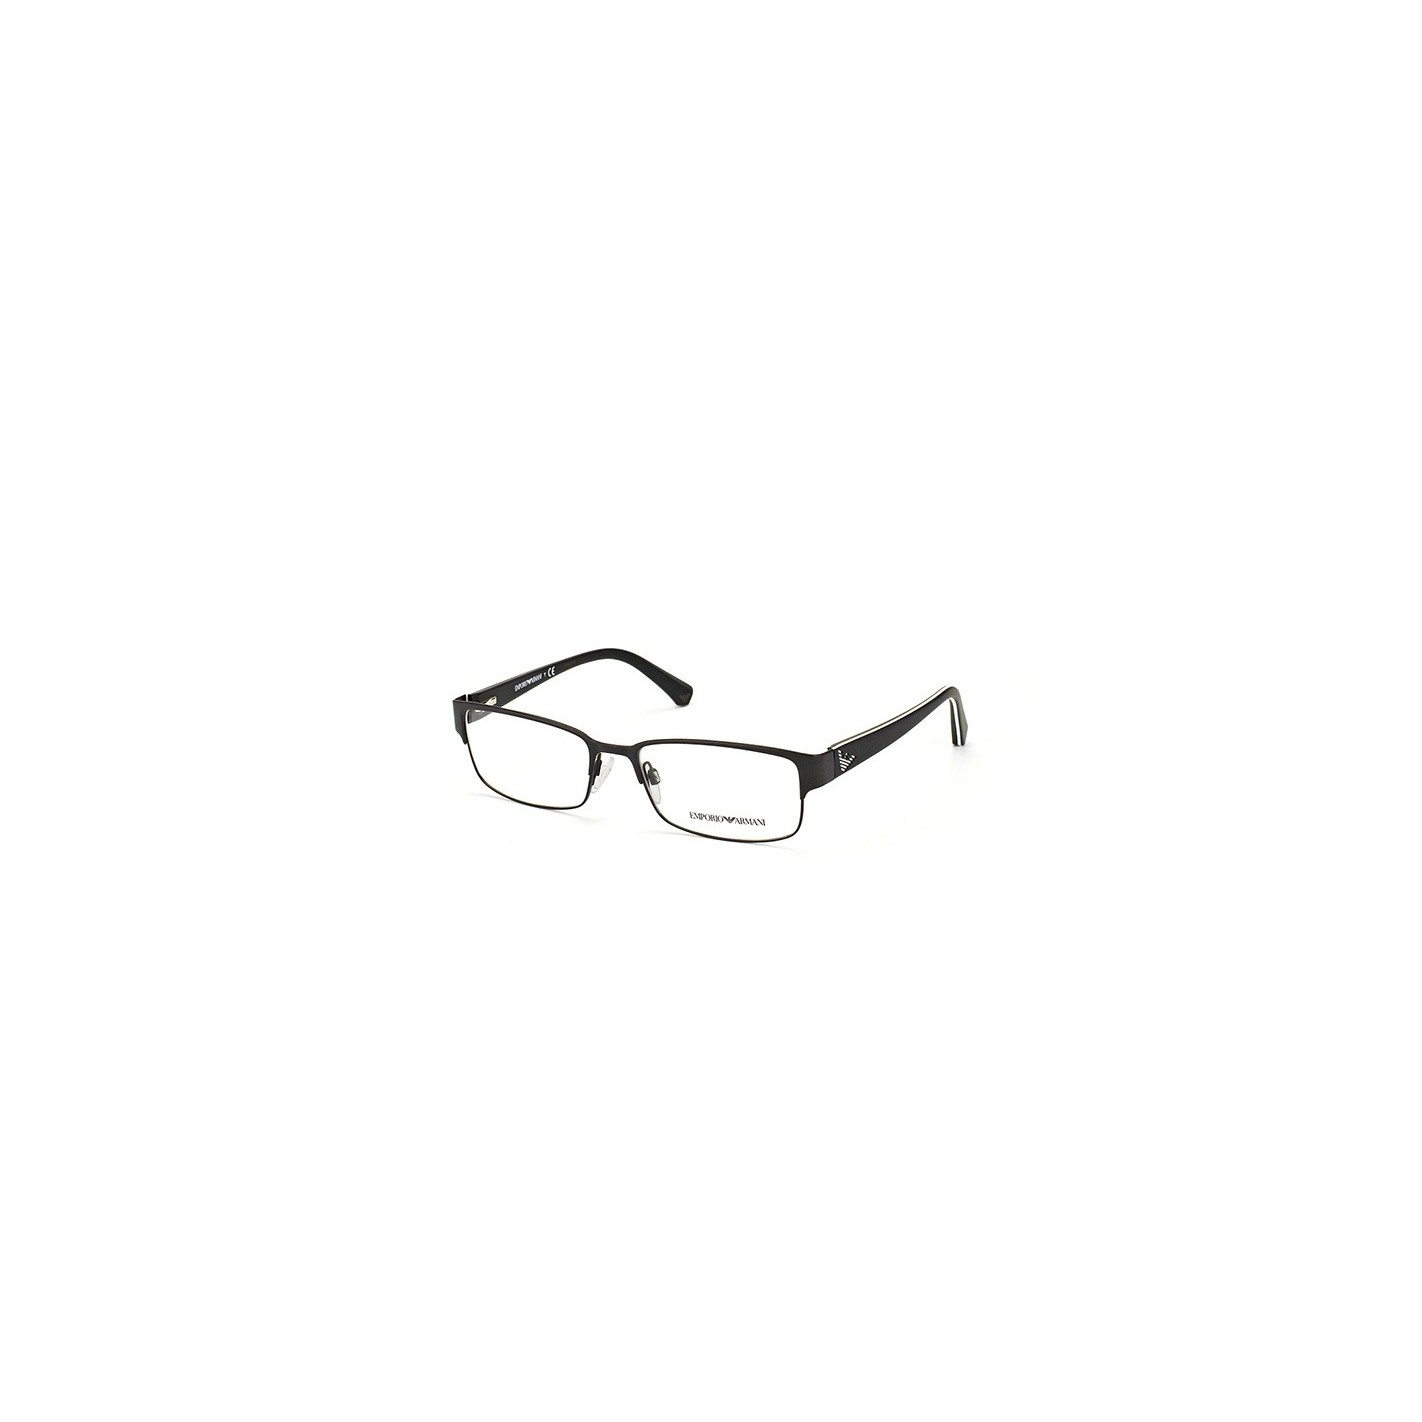 Estas gafas diseñadas con la mejor con materiales más exclusivos e innovadores. Tendencia y moda, añade elegancia